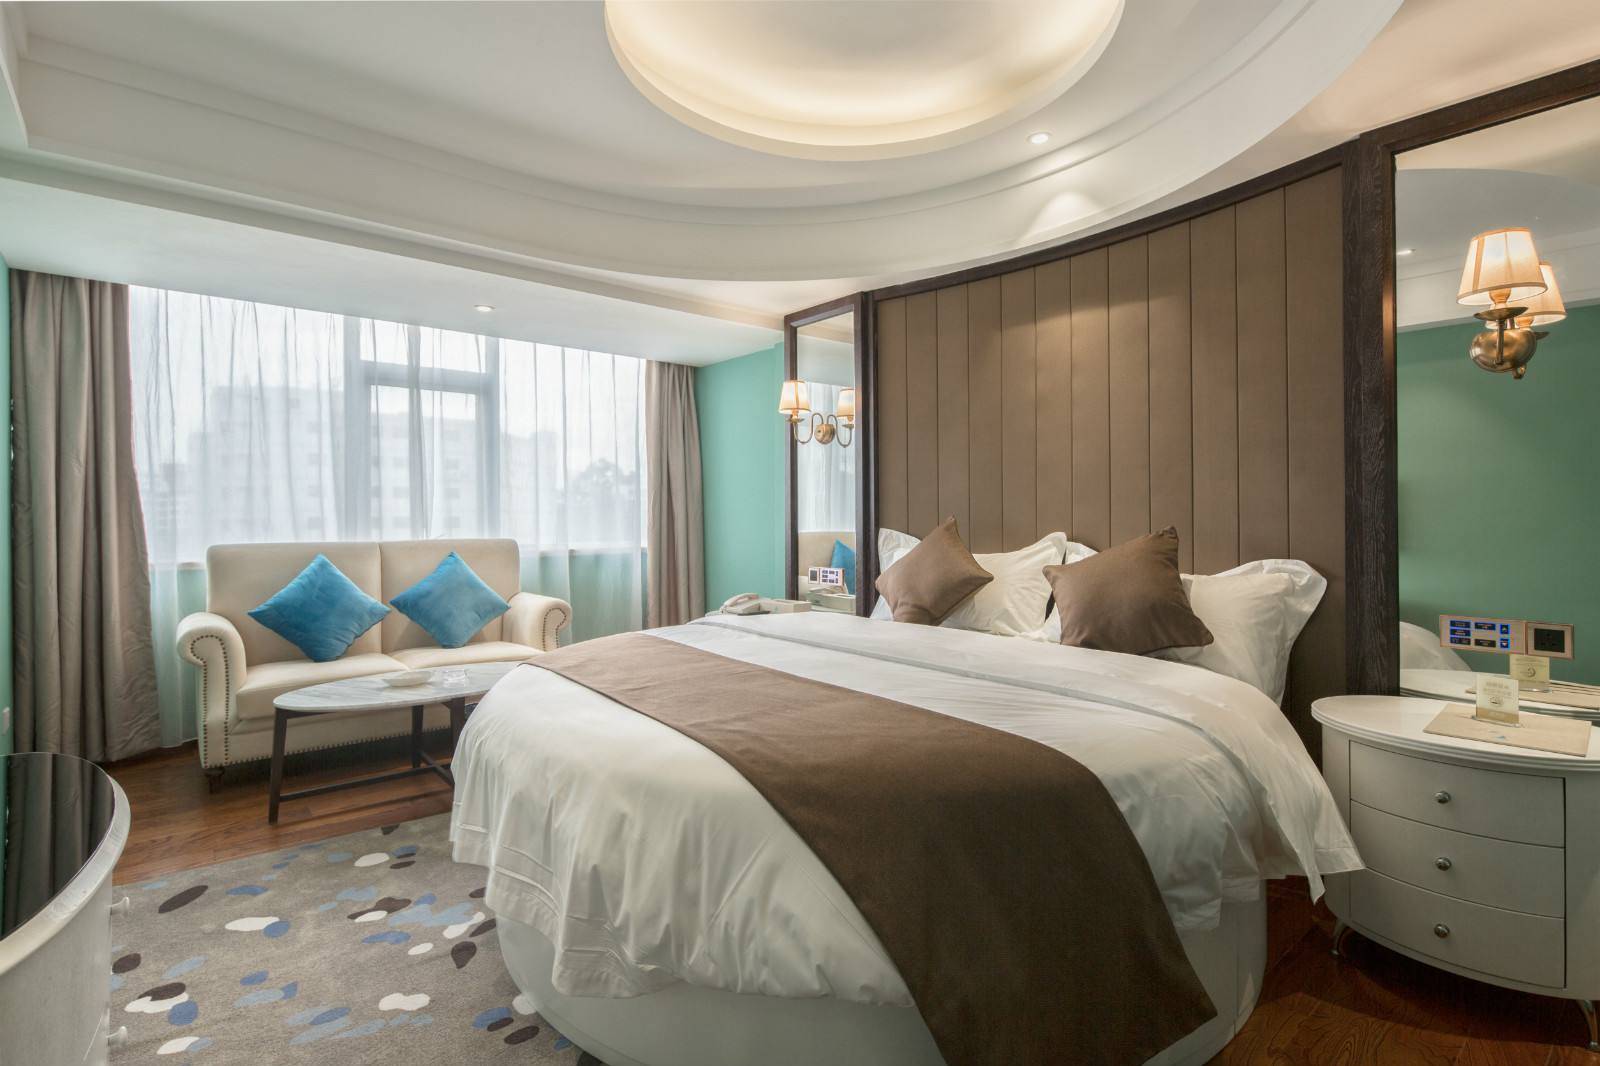 圆床,水床,电动床,还有这样的酒店床型你见过吗?